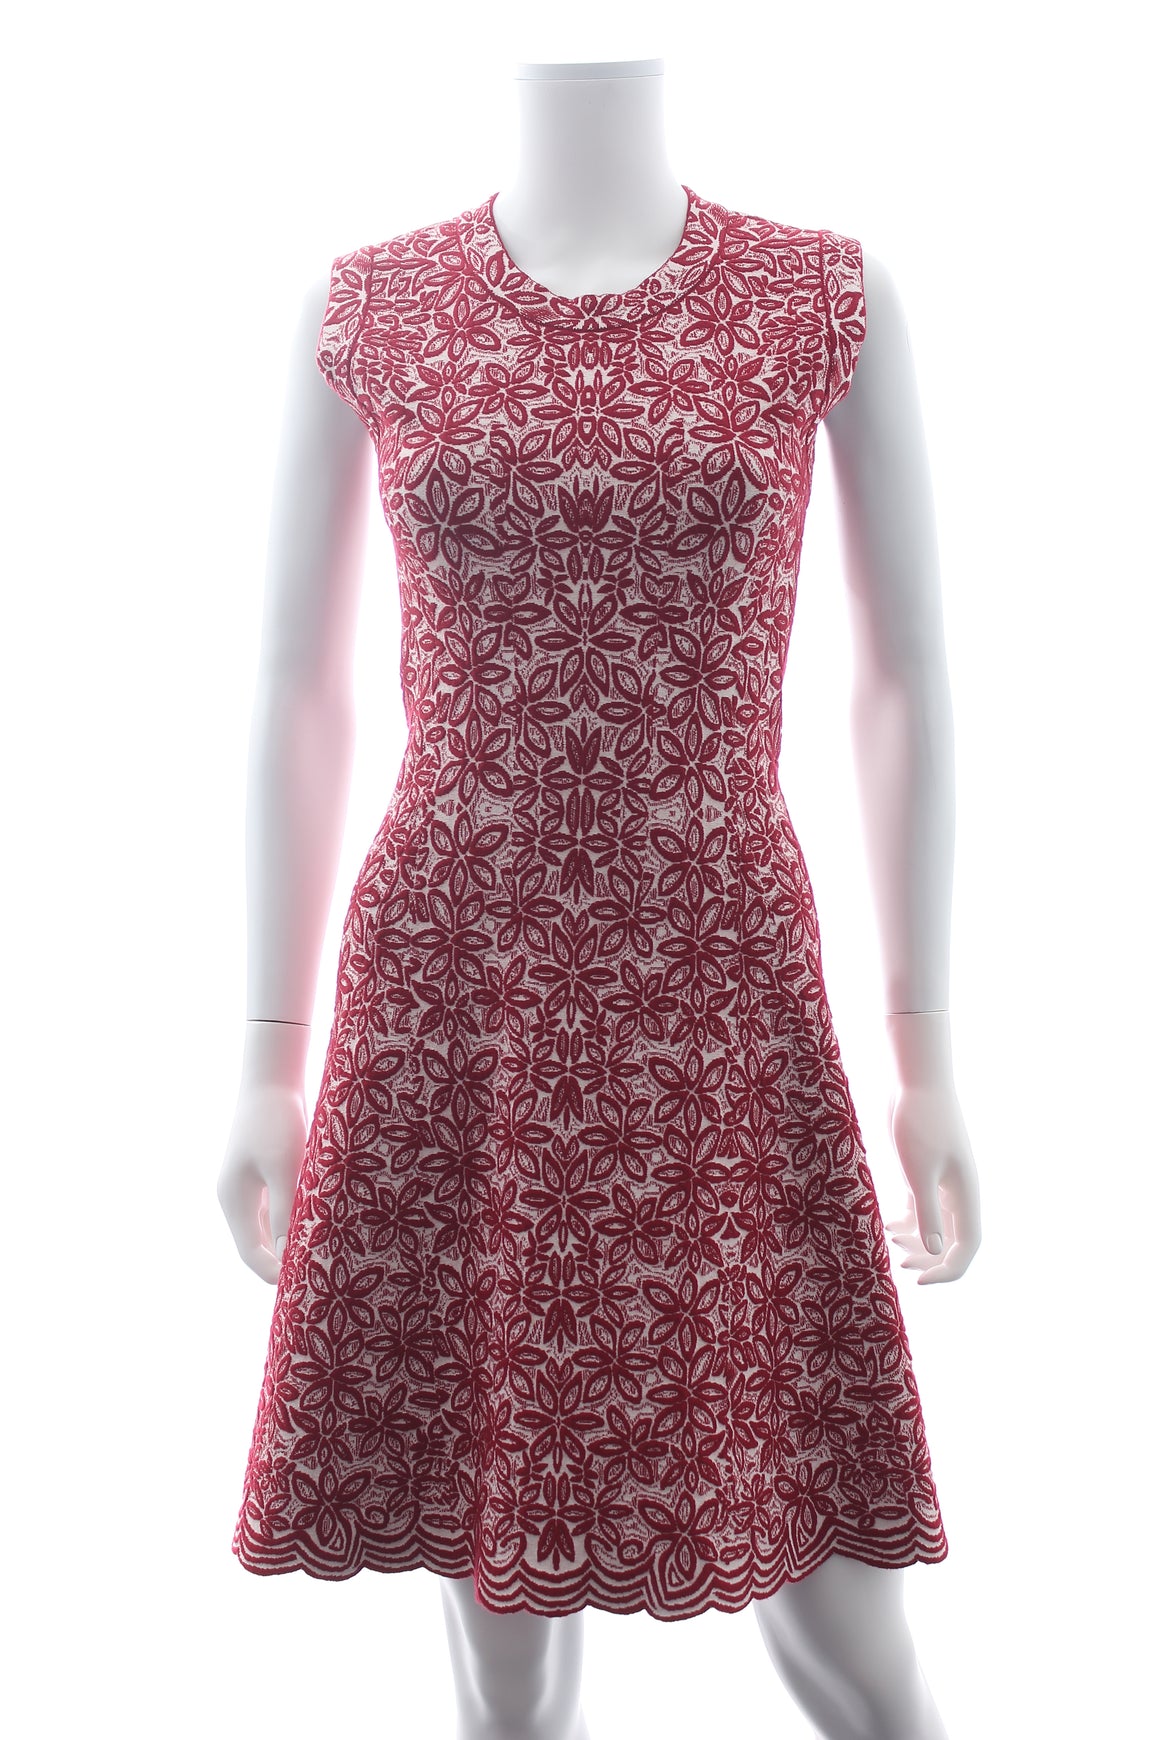 Alaïa Flower Wool-Stretch Knit Dress